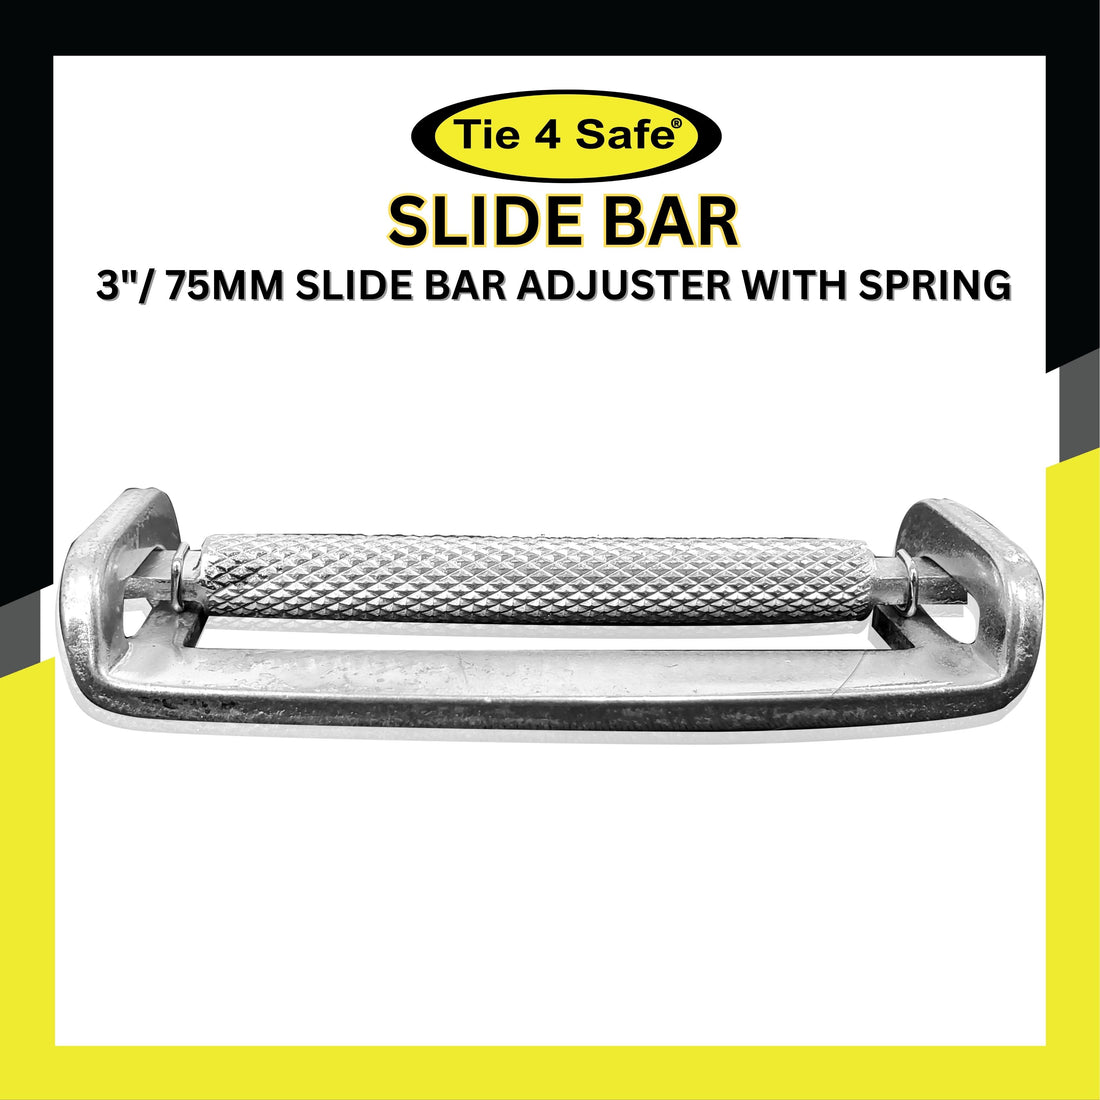 3" / 75mm Slide Bar Adjuster With Spring